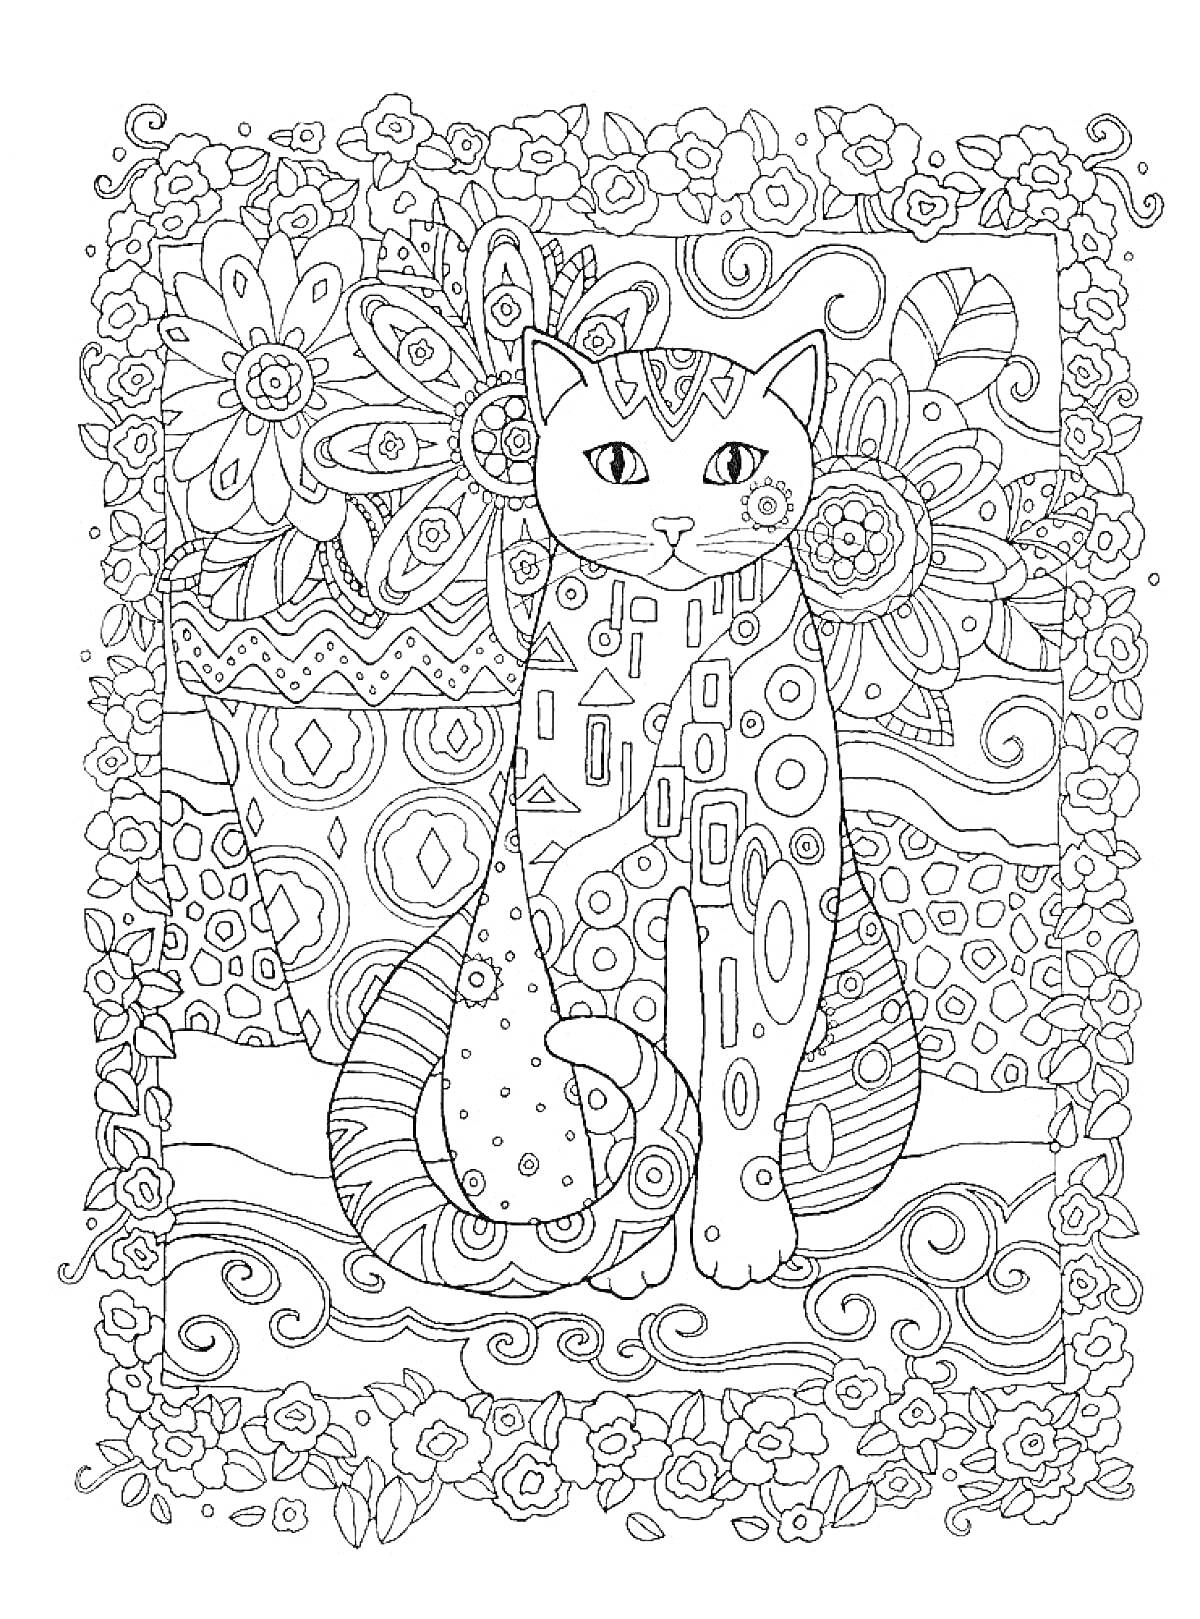 Кот сидит на фоне цветов, узоров и декоративной рамки из цветов и завитков